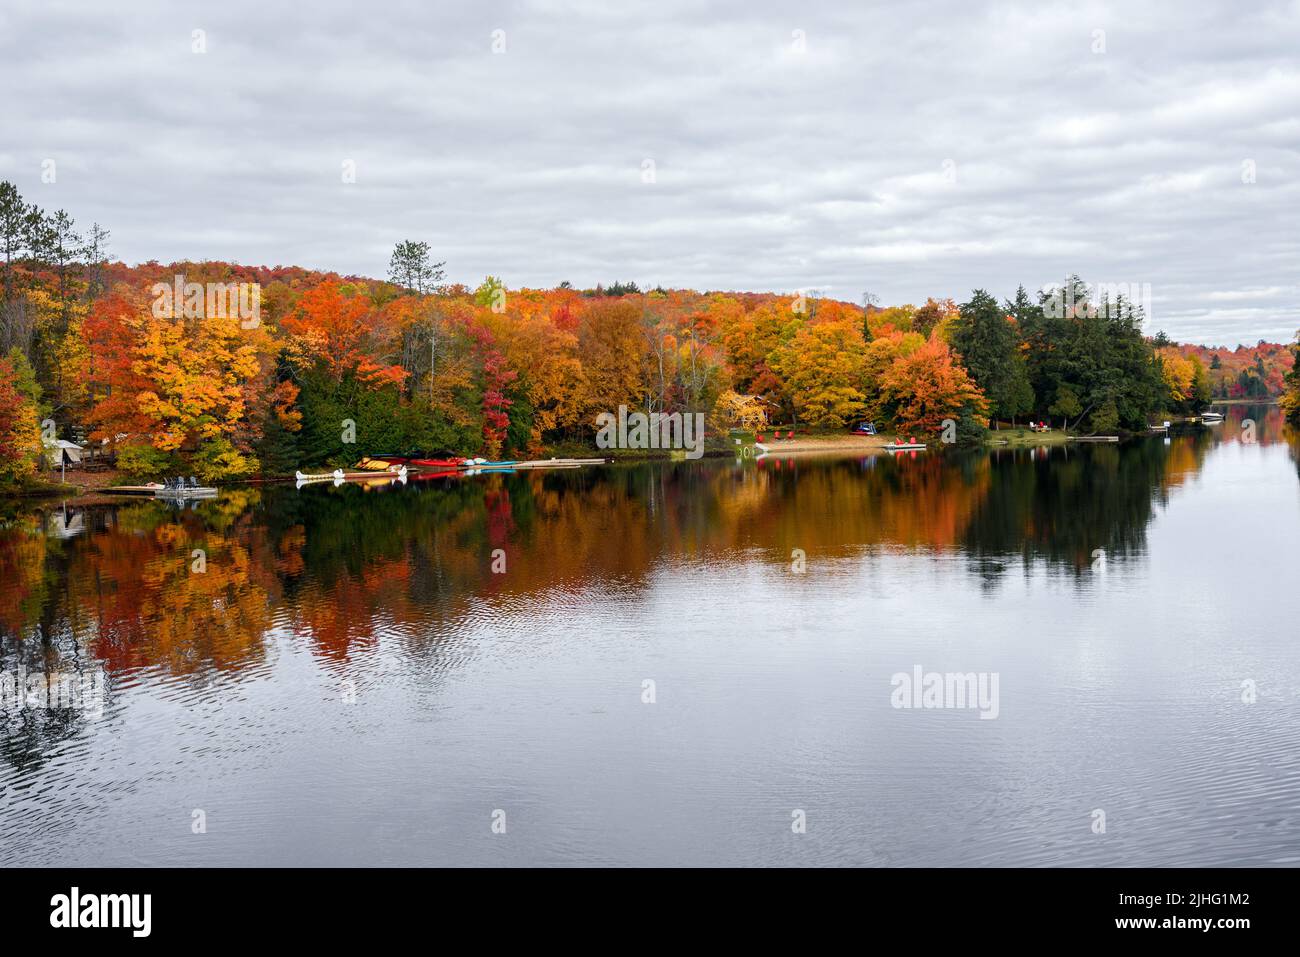 Hölzerne Stege mit Adirondack-Stuhl auf ihnen und bunte Kanus entlang der bewaldeten Ufer eines Sees an einem bewölkten Herbsttag, atemberaubende Herbstlaub. Stockfoto